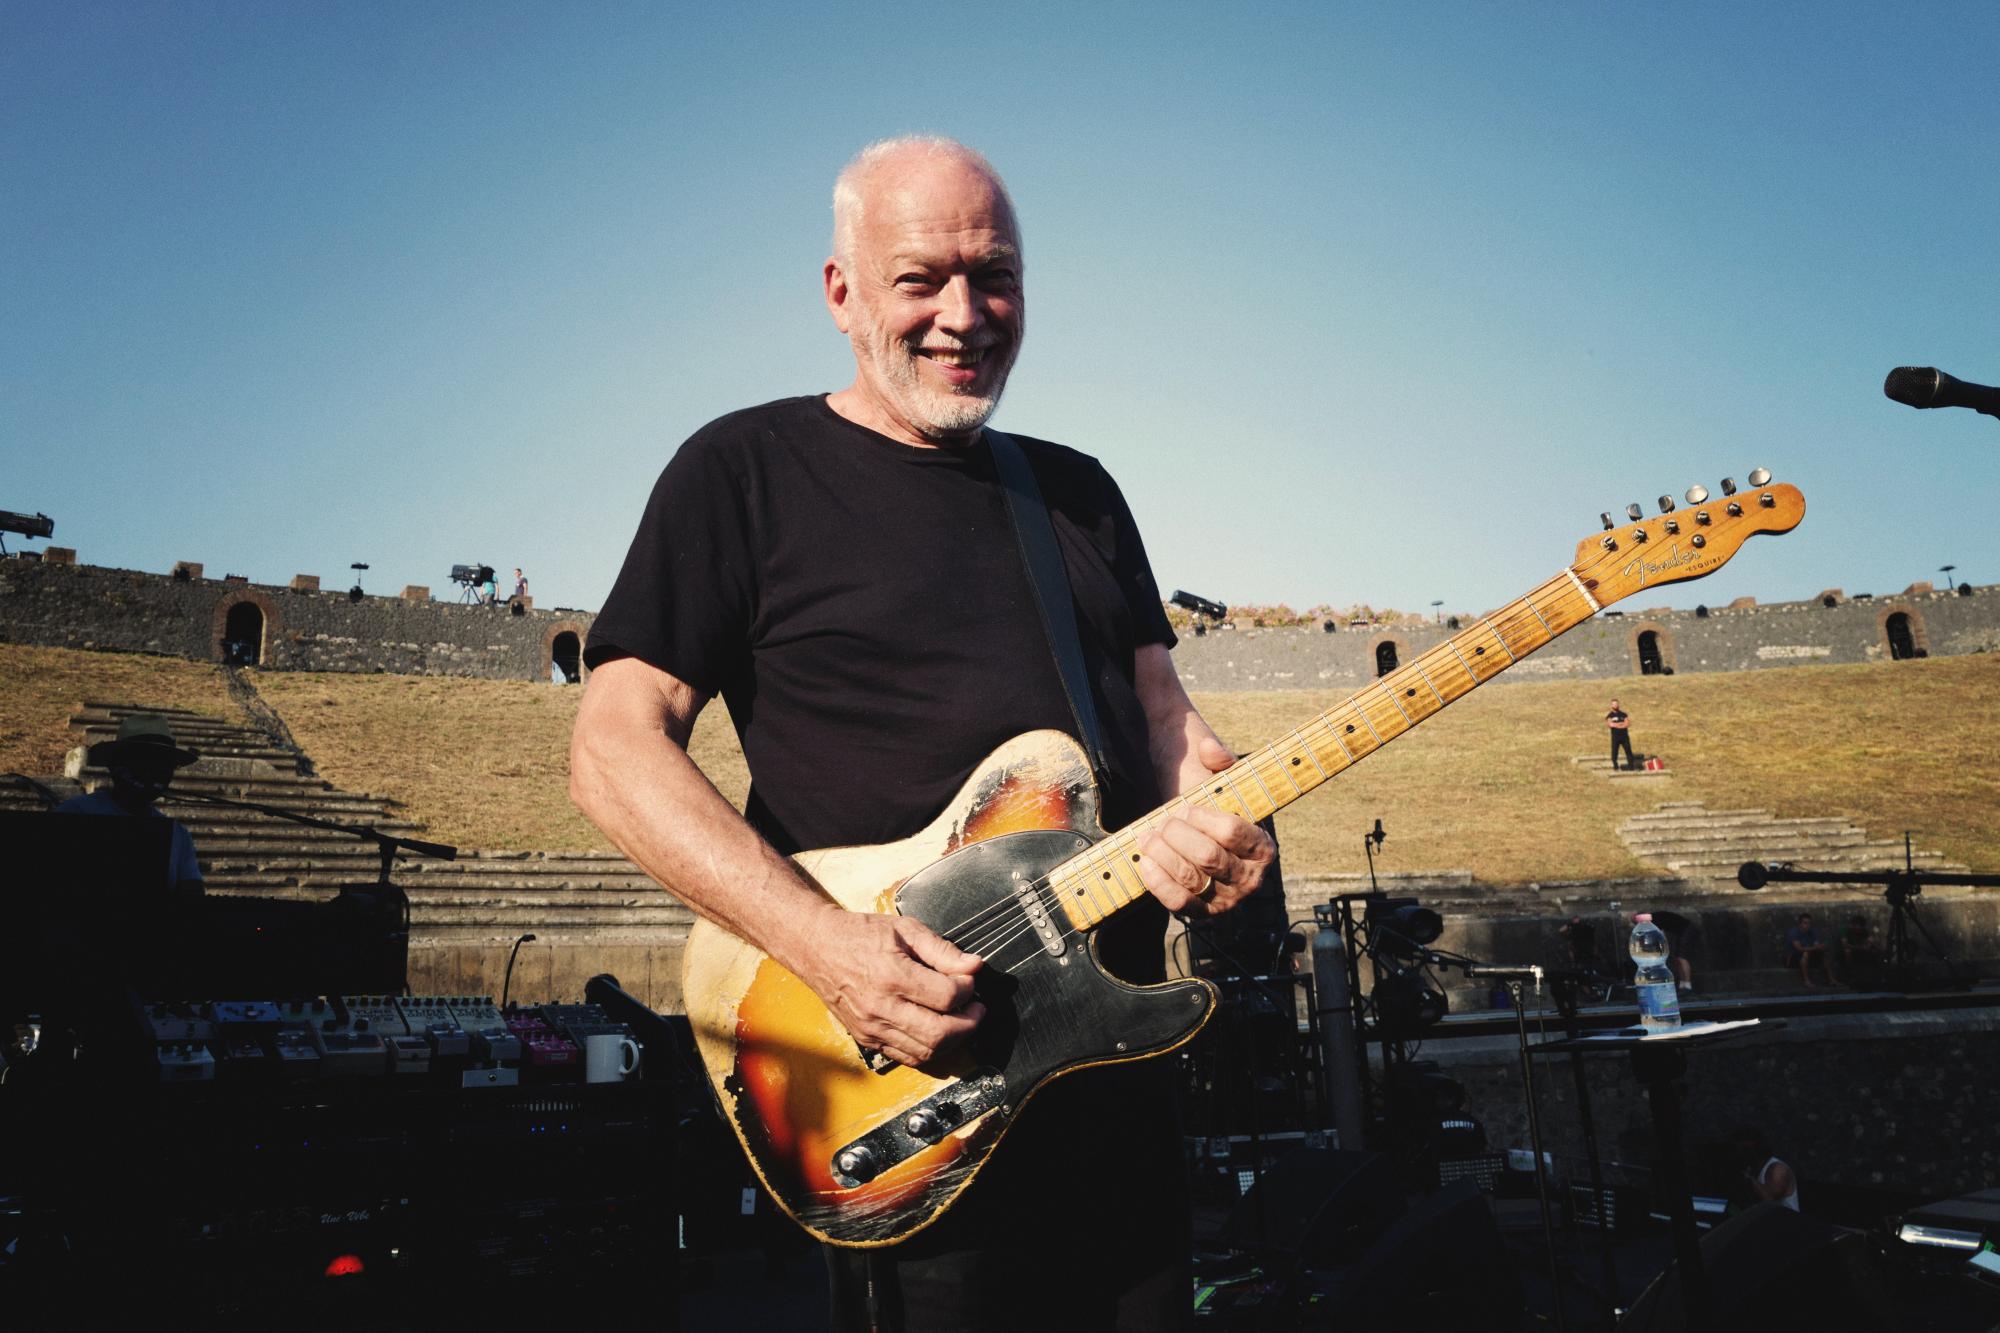 David Gilmour regressou a Pompeii, 45 anos depois, e agora o concerto está disponível de forma gratuita